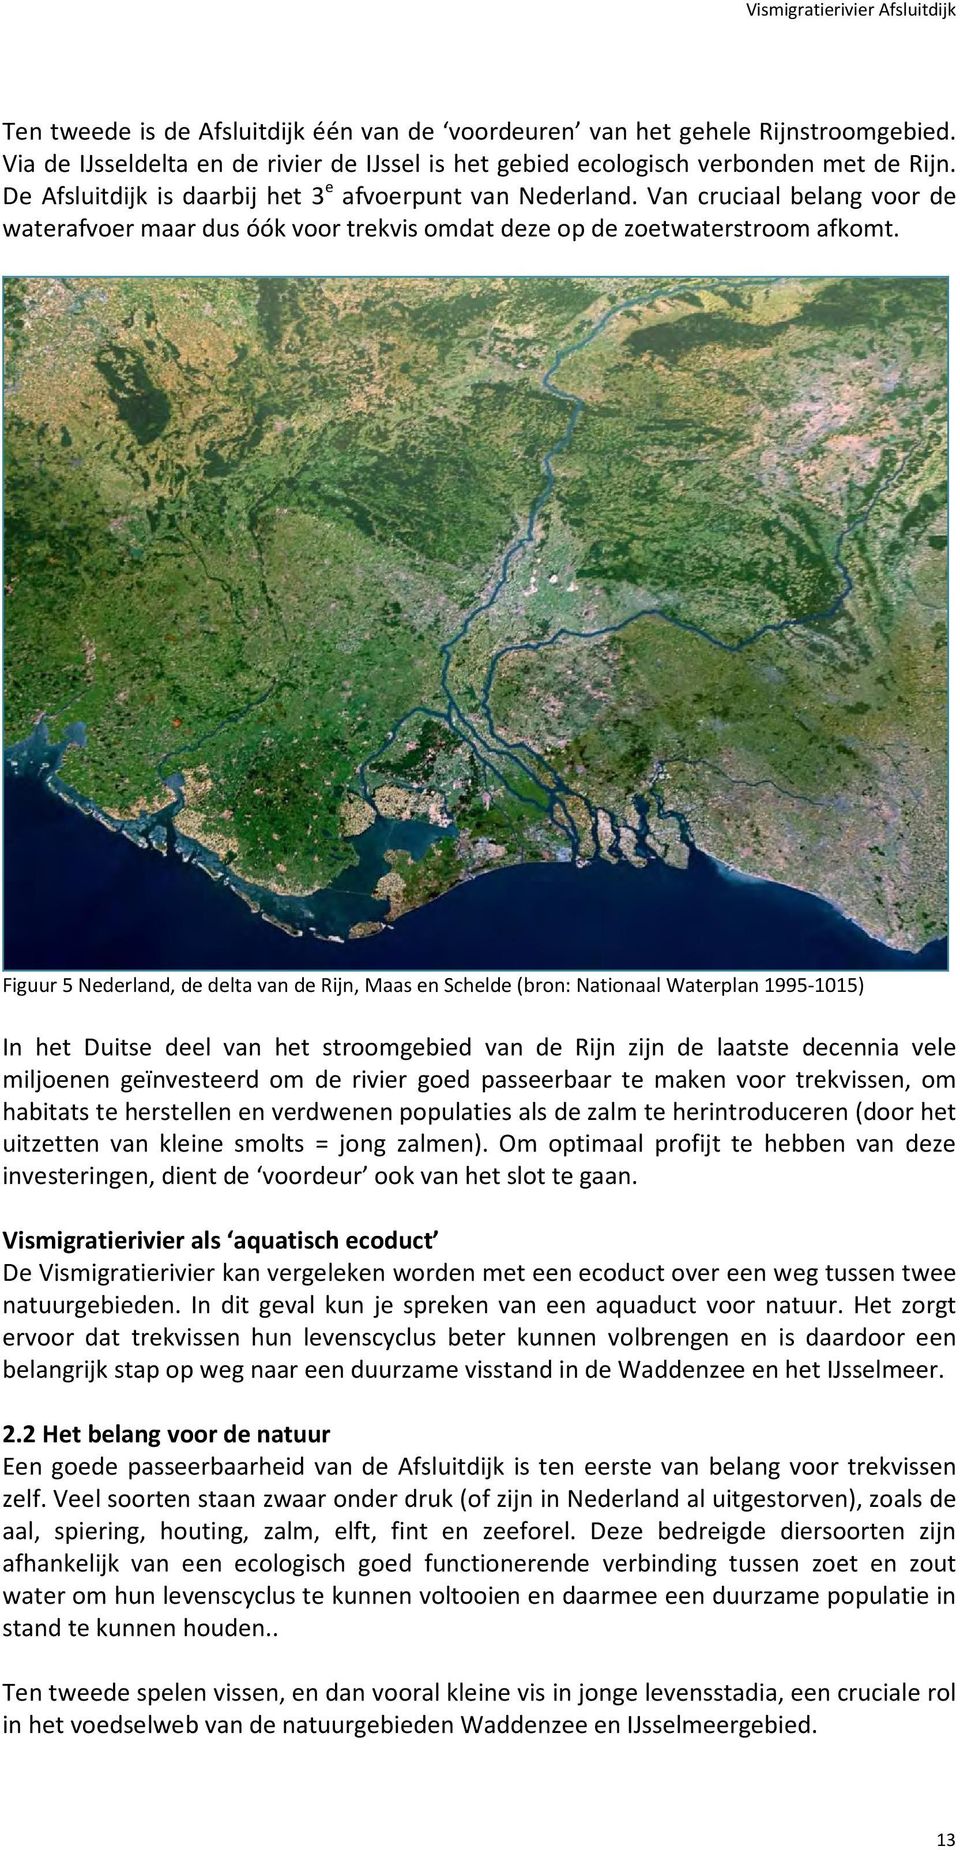 Figuur 5 Nederland, de delta van de Rijn, Maas en Schelde (bron: Nationaal Waterplan 1995-1015) In het Duitse deel van het stroomgebied van de Rijn zijn de laatste decennia vele miljoenen